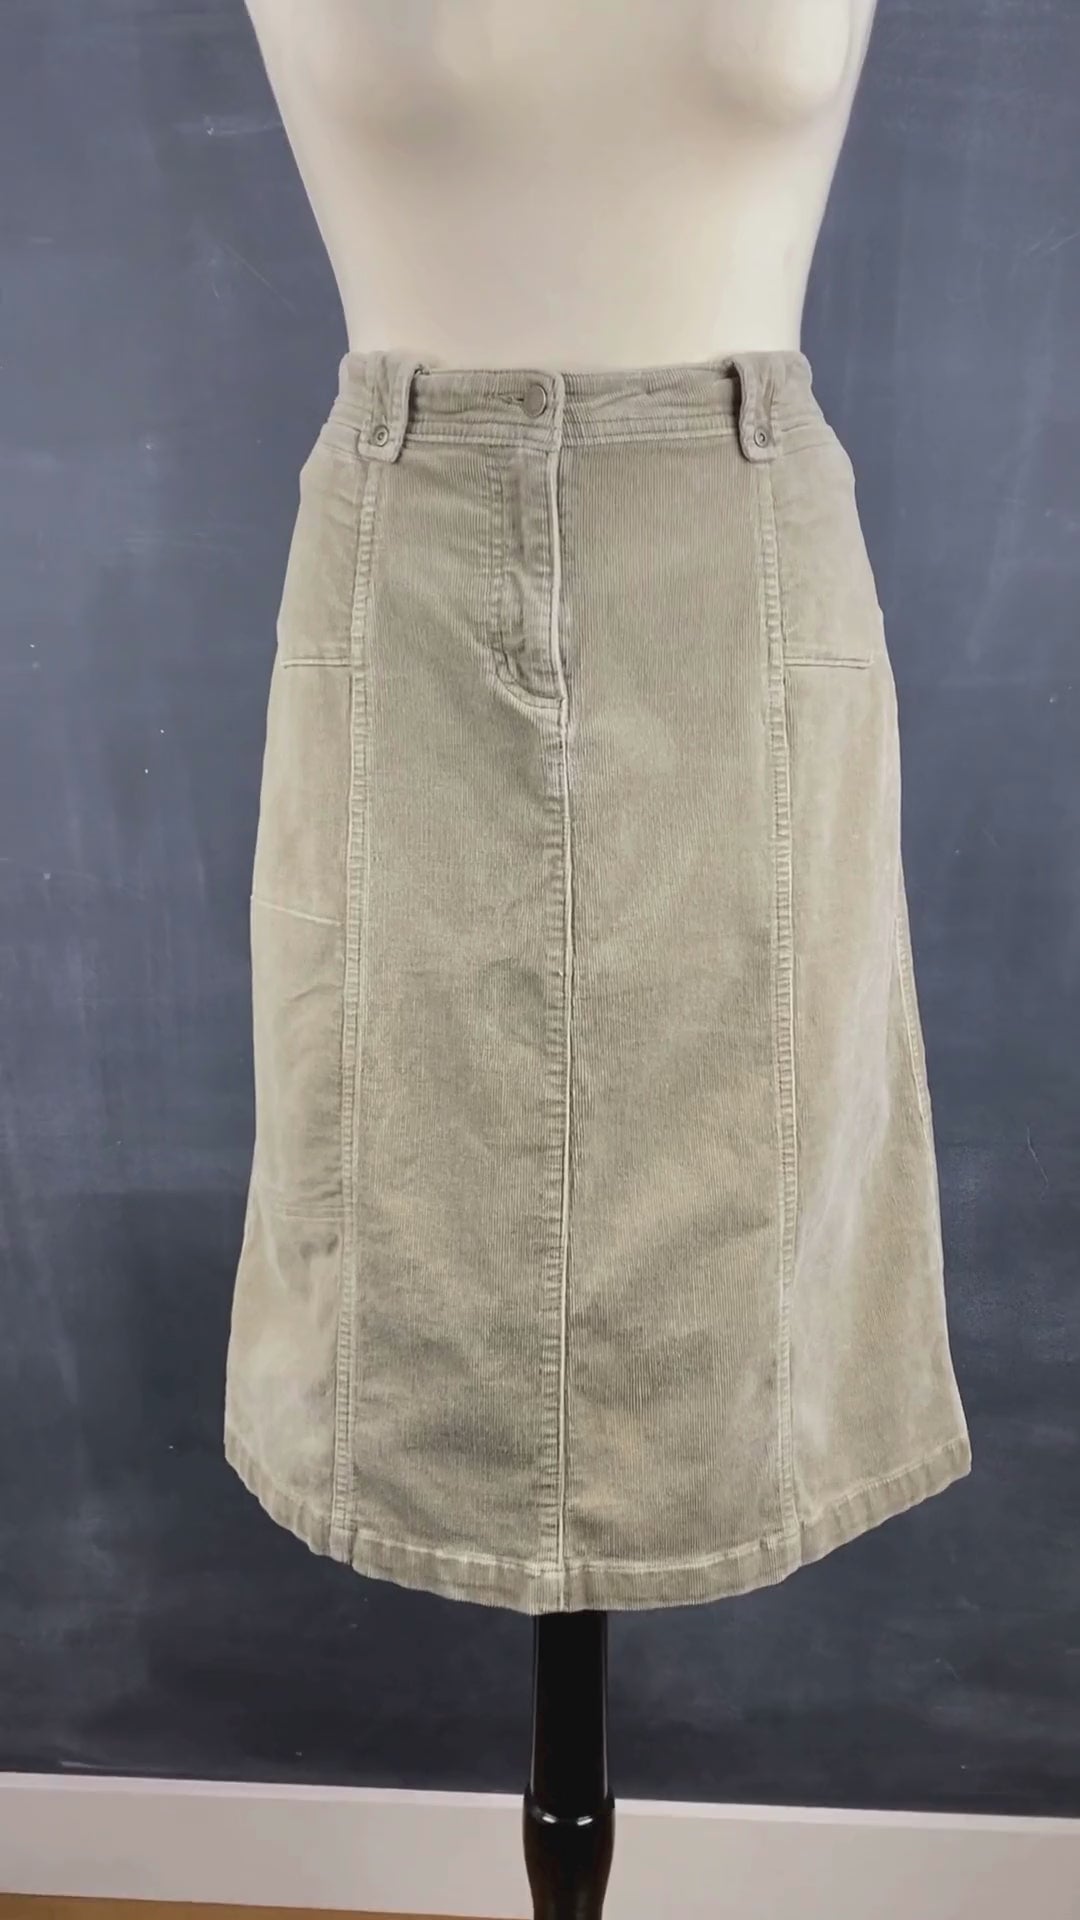 Jupe sable en velours côtelé extensible Woolrich, taille 6. Vue de la vidéo qui présente tous les détails de la jupe.